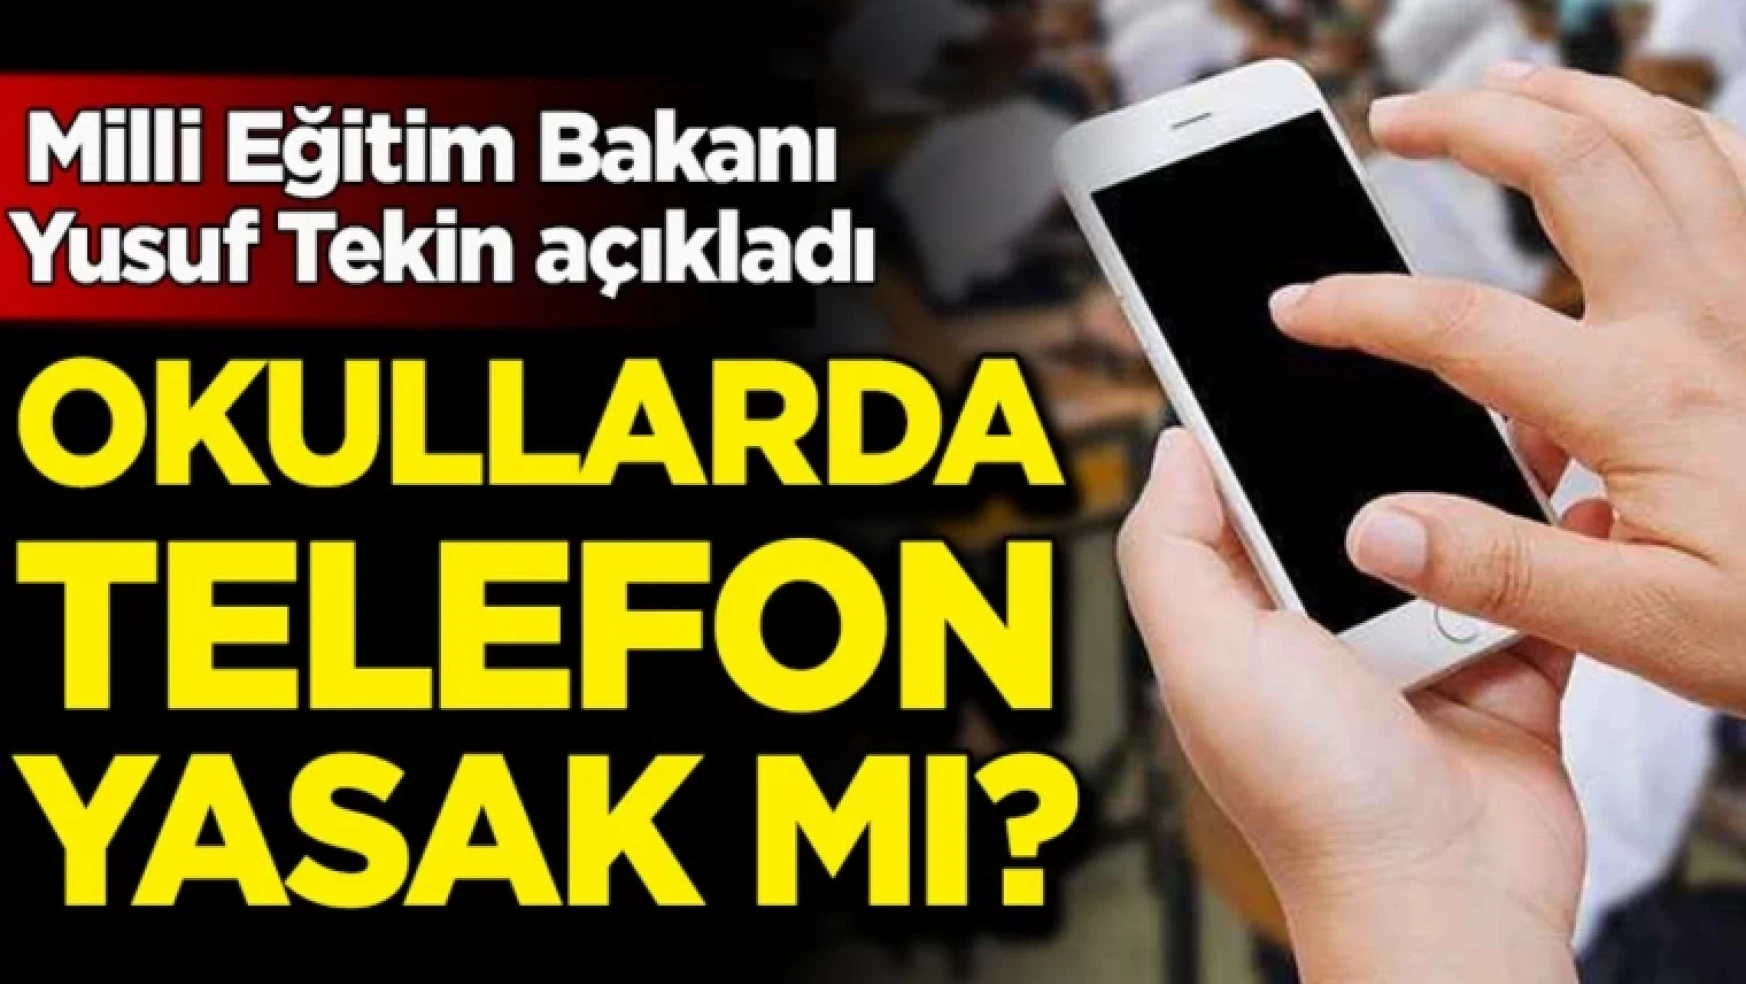 Milli Eğitim Bakanı Yusuf Tekin açıkladı: Okullarda telefon yasak mı?